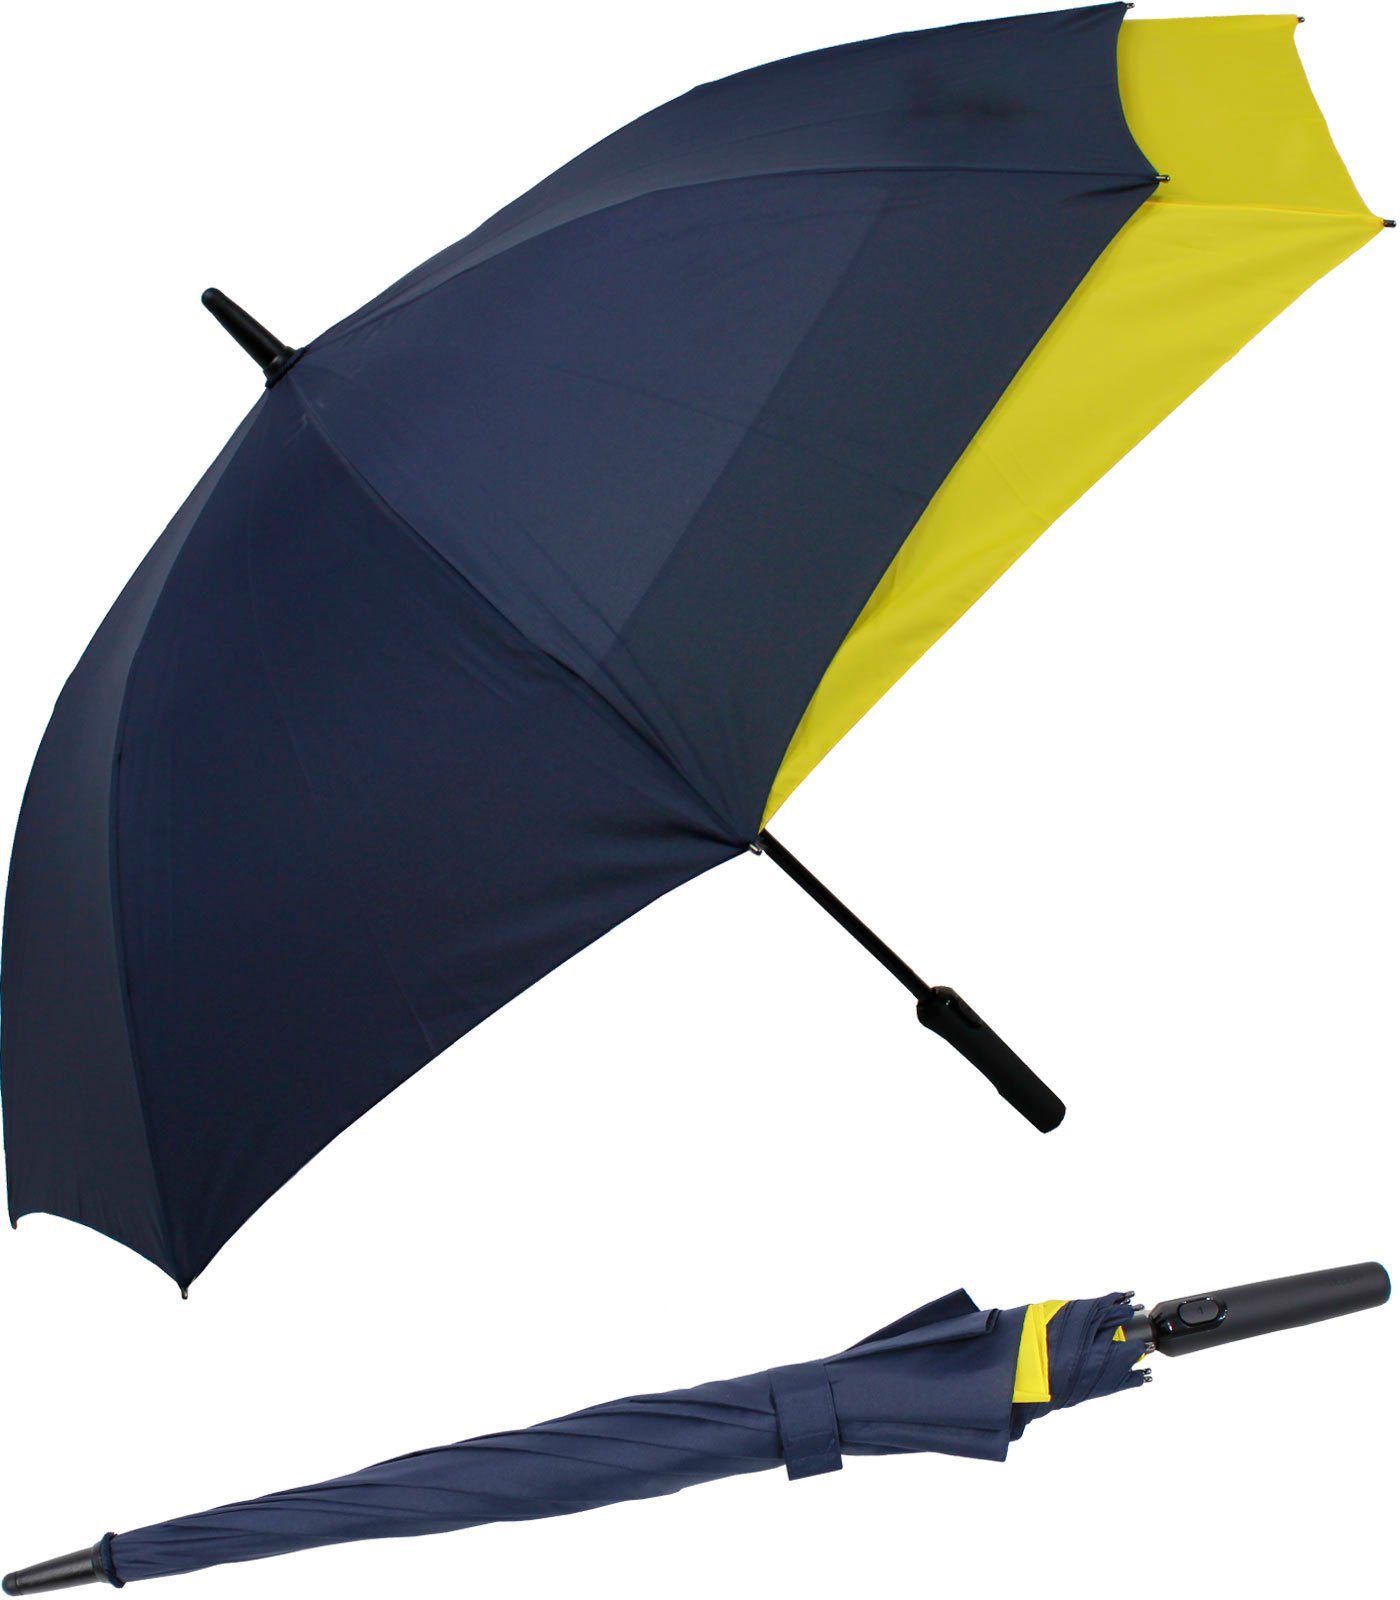 beim Move doppler® vergrößert to navyblau-gelb mehr mit Öffnen - Fiberglas vor Regen Schutz sich Auf-Automatik Langregenschirm für XL,